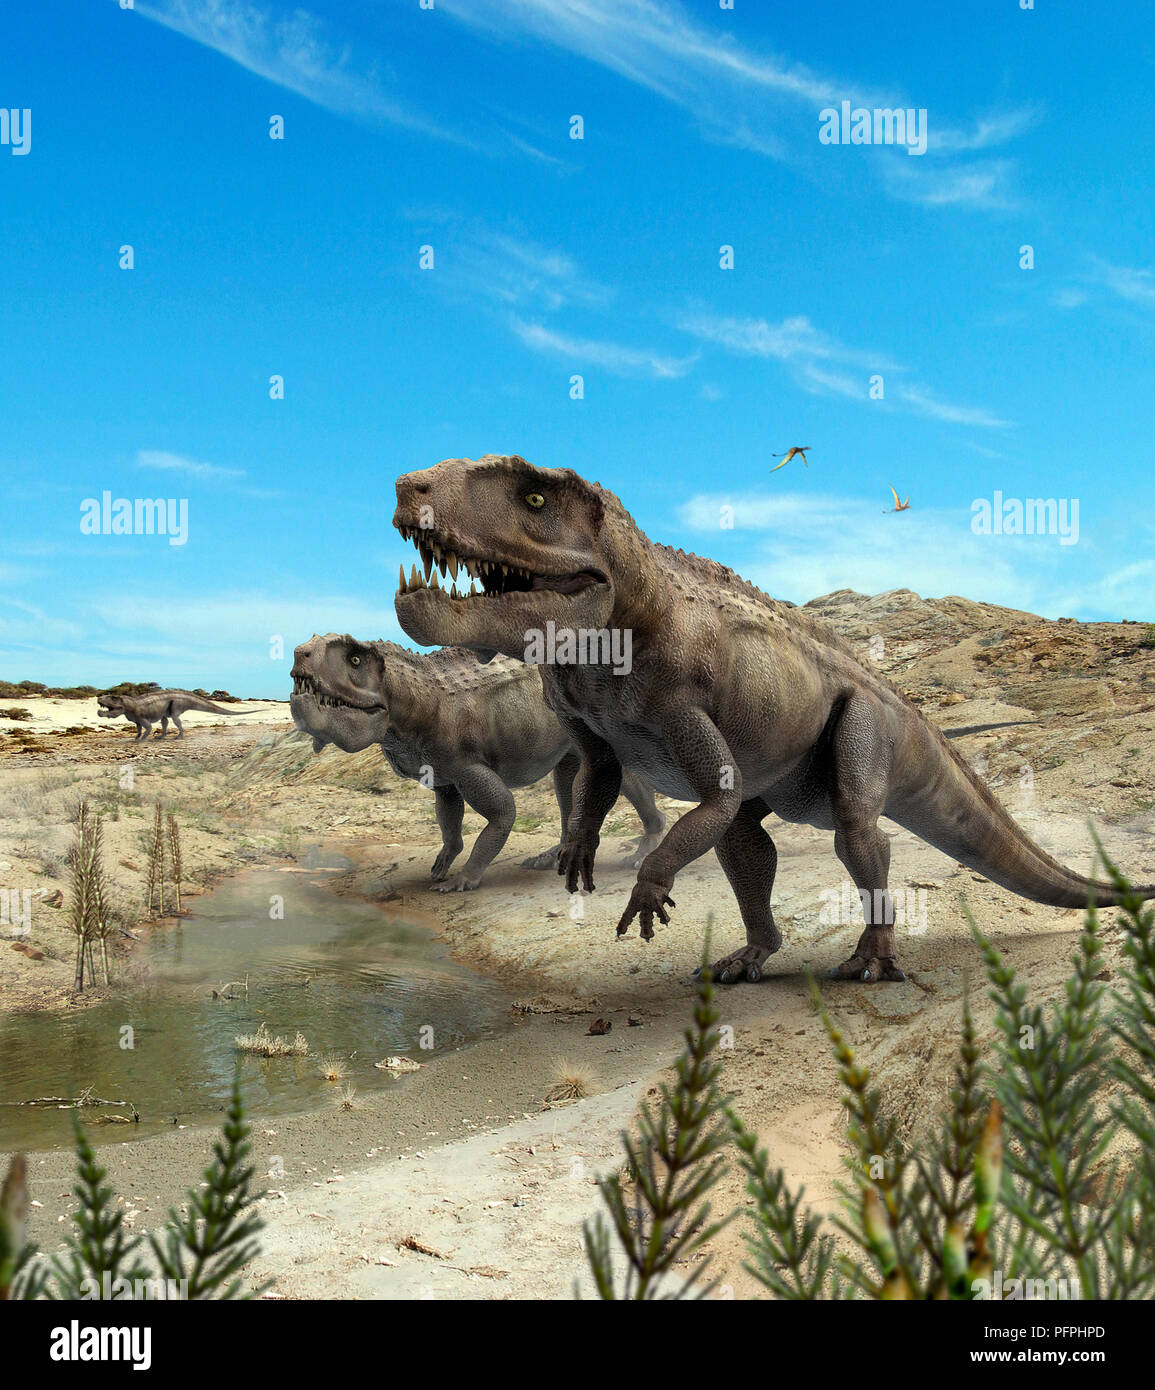 Postosuchus, Triassic era archosaurs in prehistoric landscape Stock Photo